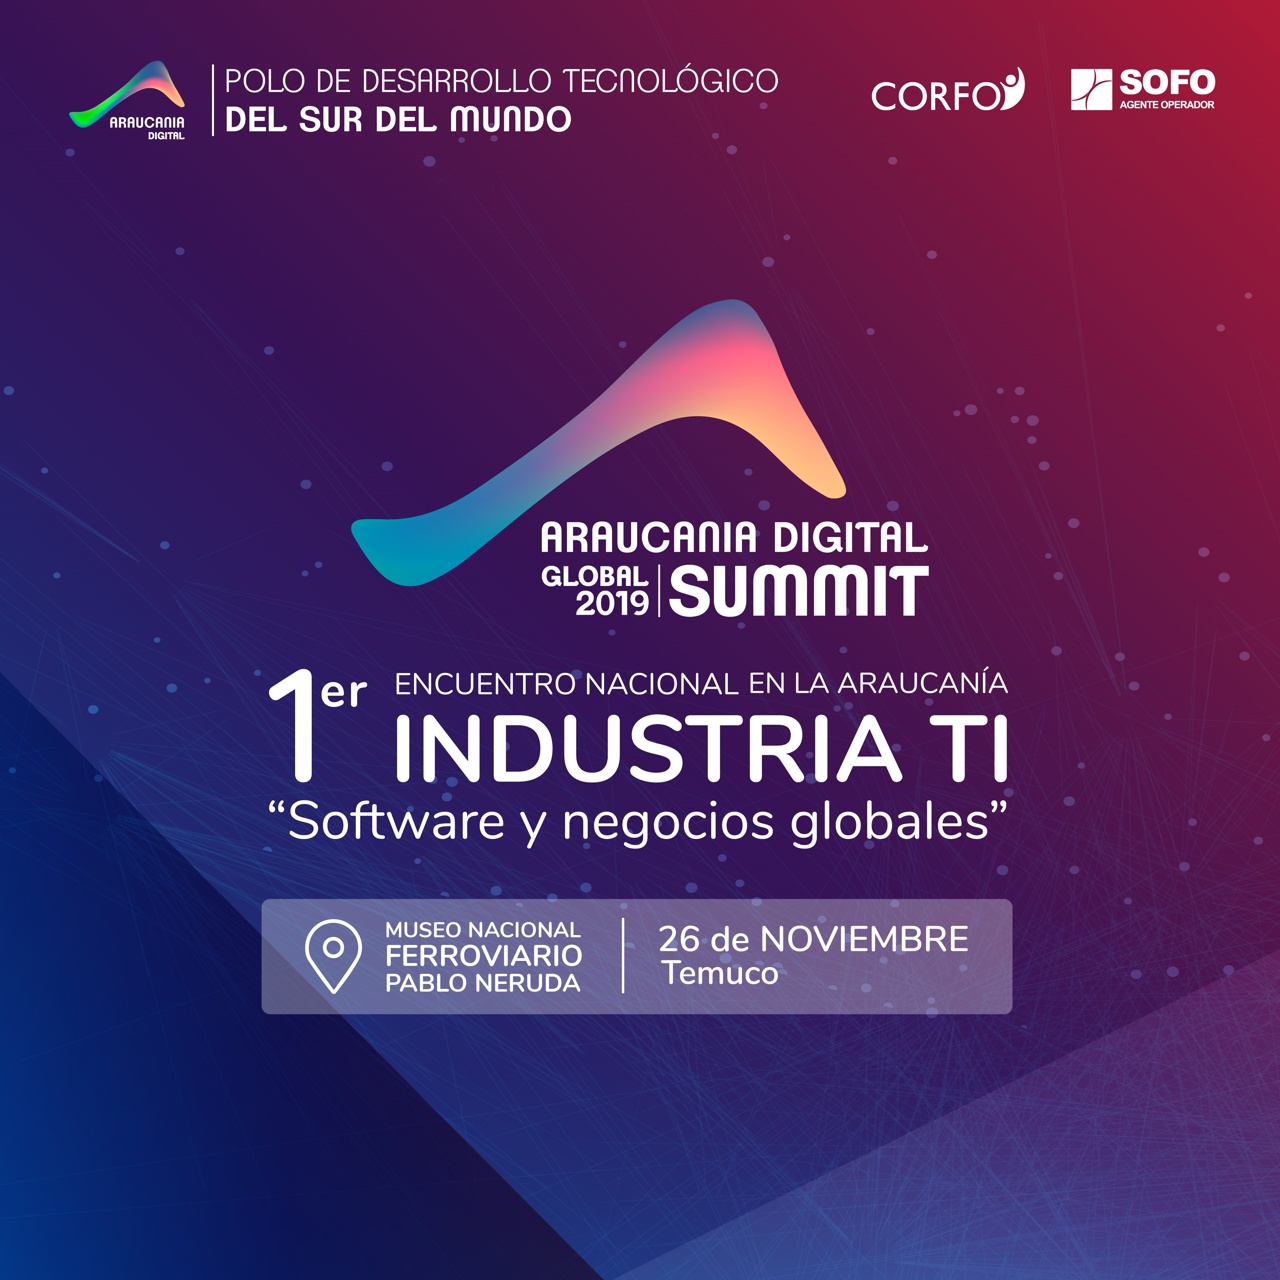 Araucanía Digital Global Summit 2019